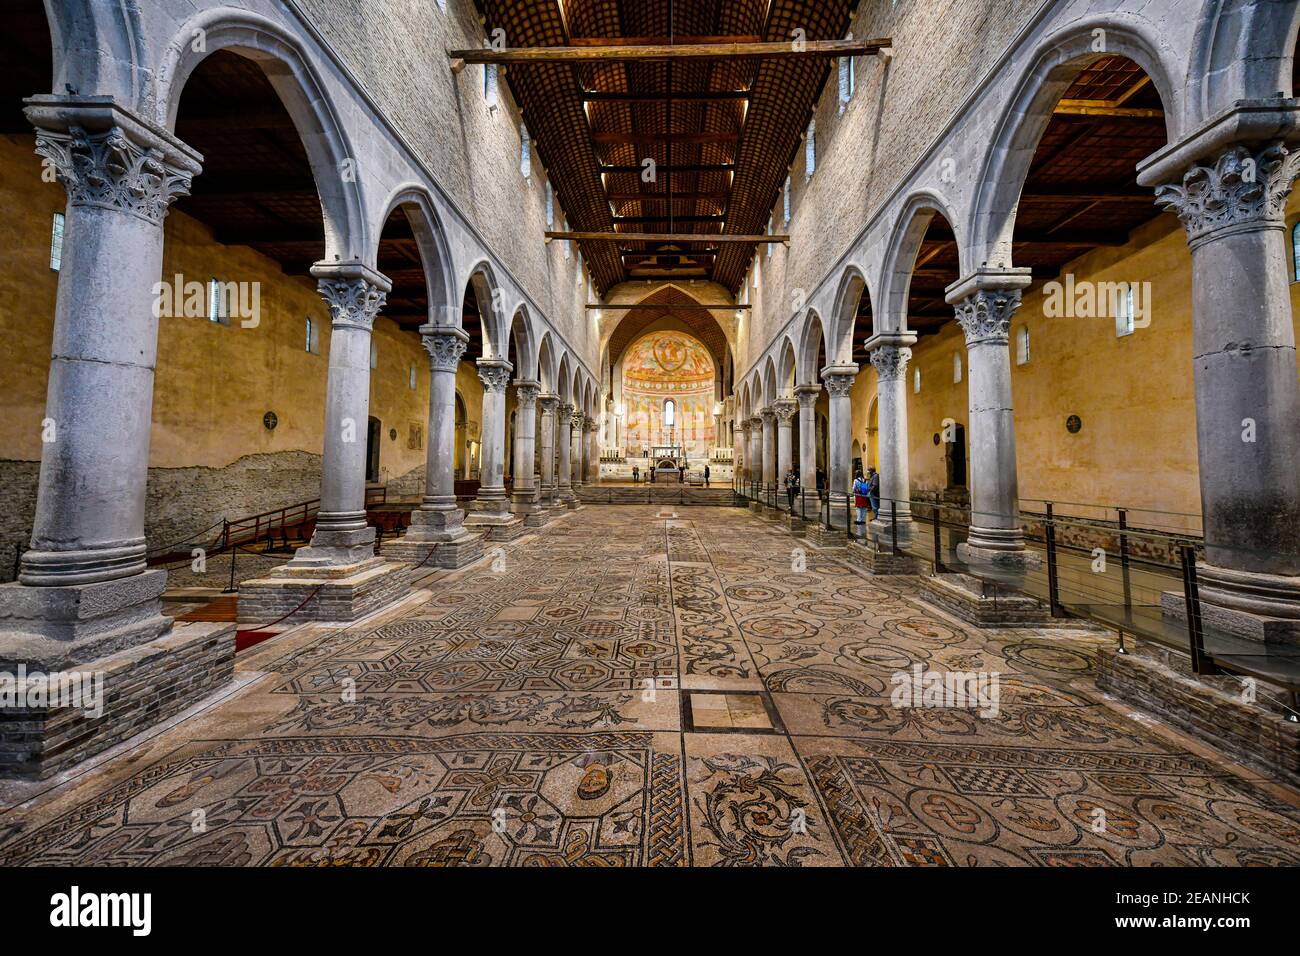 Interno della Cattedrale di Aquileia con il pavimento in mosaico, Patrimonio dell'Umanità dell'UNESCO, Aquileia, Udine, Friuli-Venezia Giulia, Italia, Europa Foto Stock